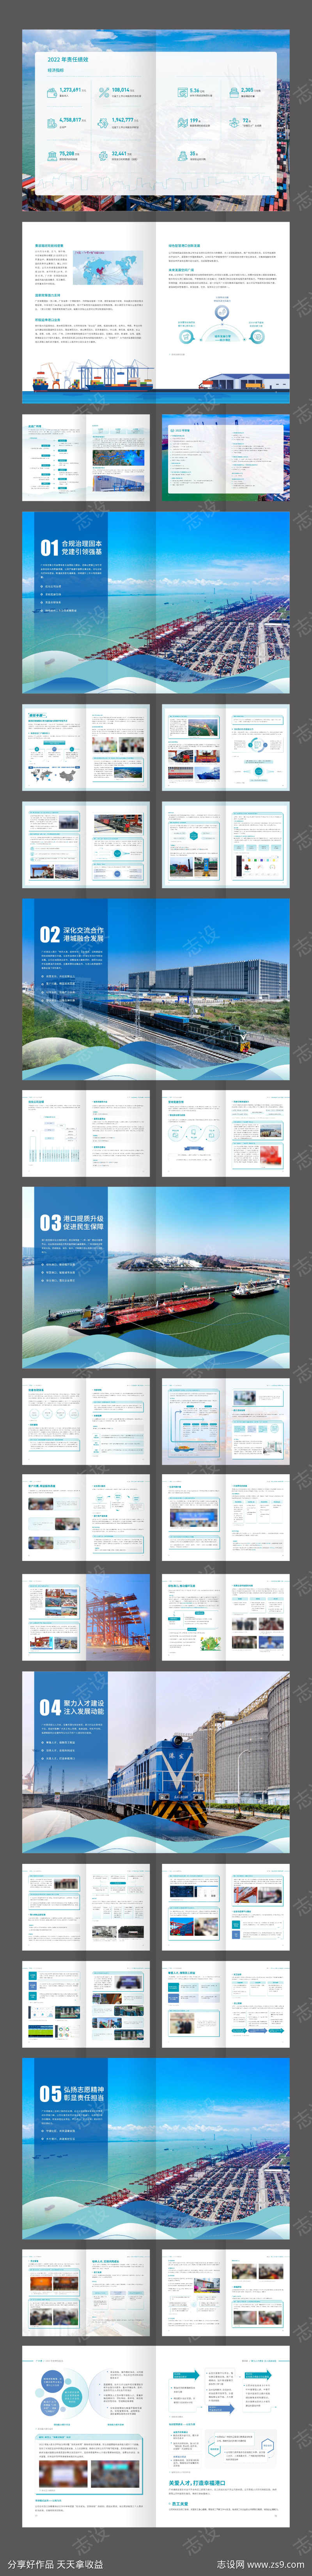 广州港口物流运输企业宣传画册